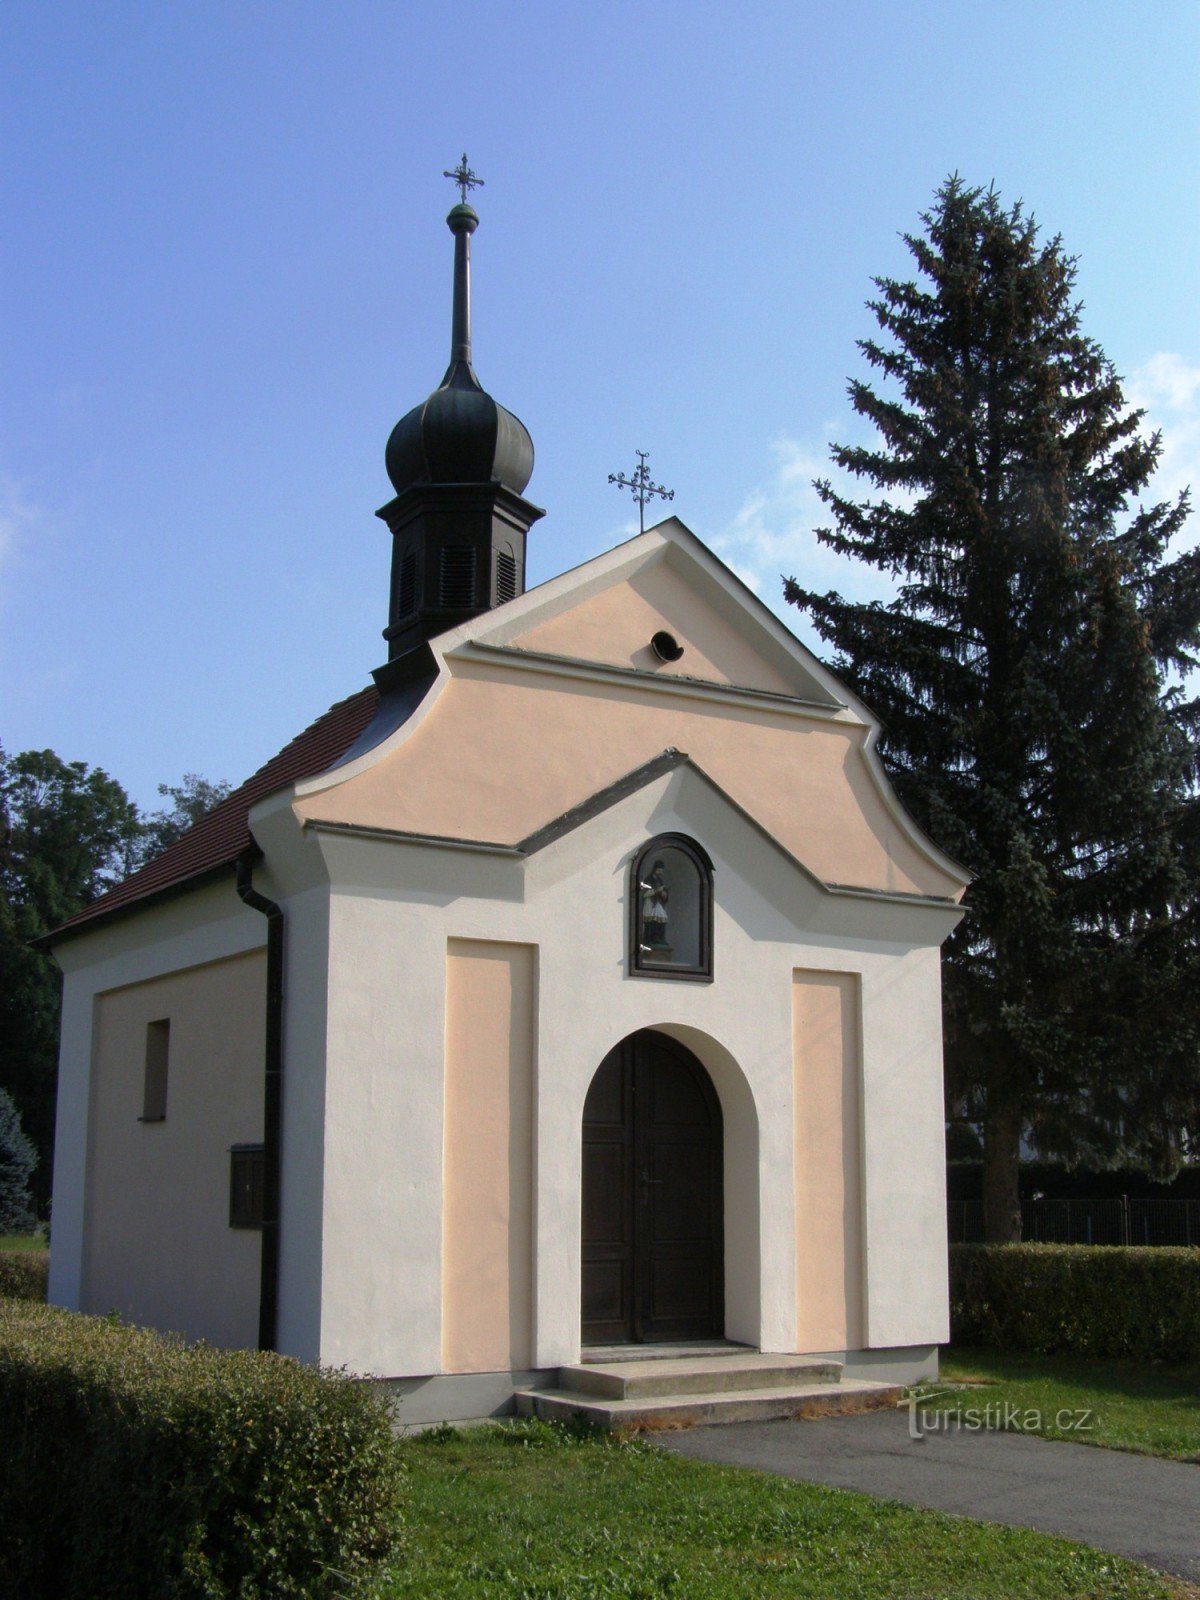 Poříčí lângă Litomyšle - capela Sf. Jan Nepomucký